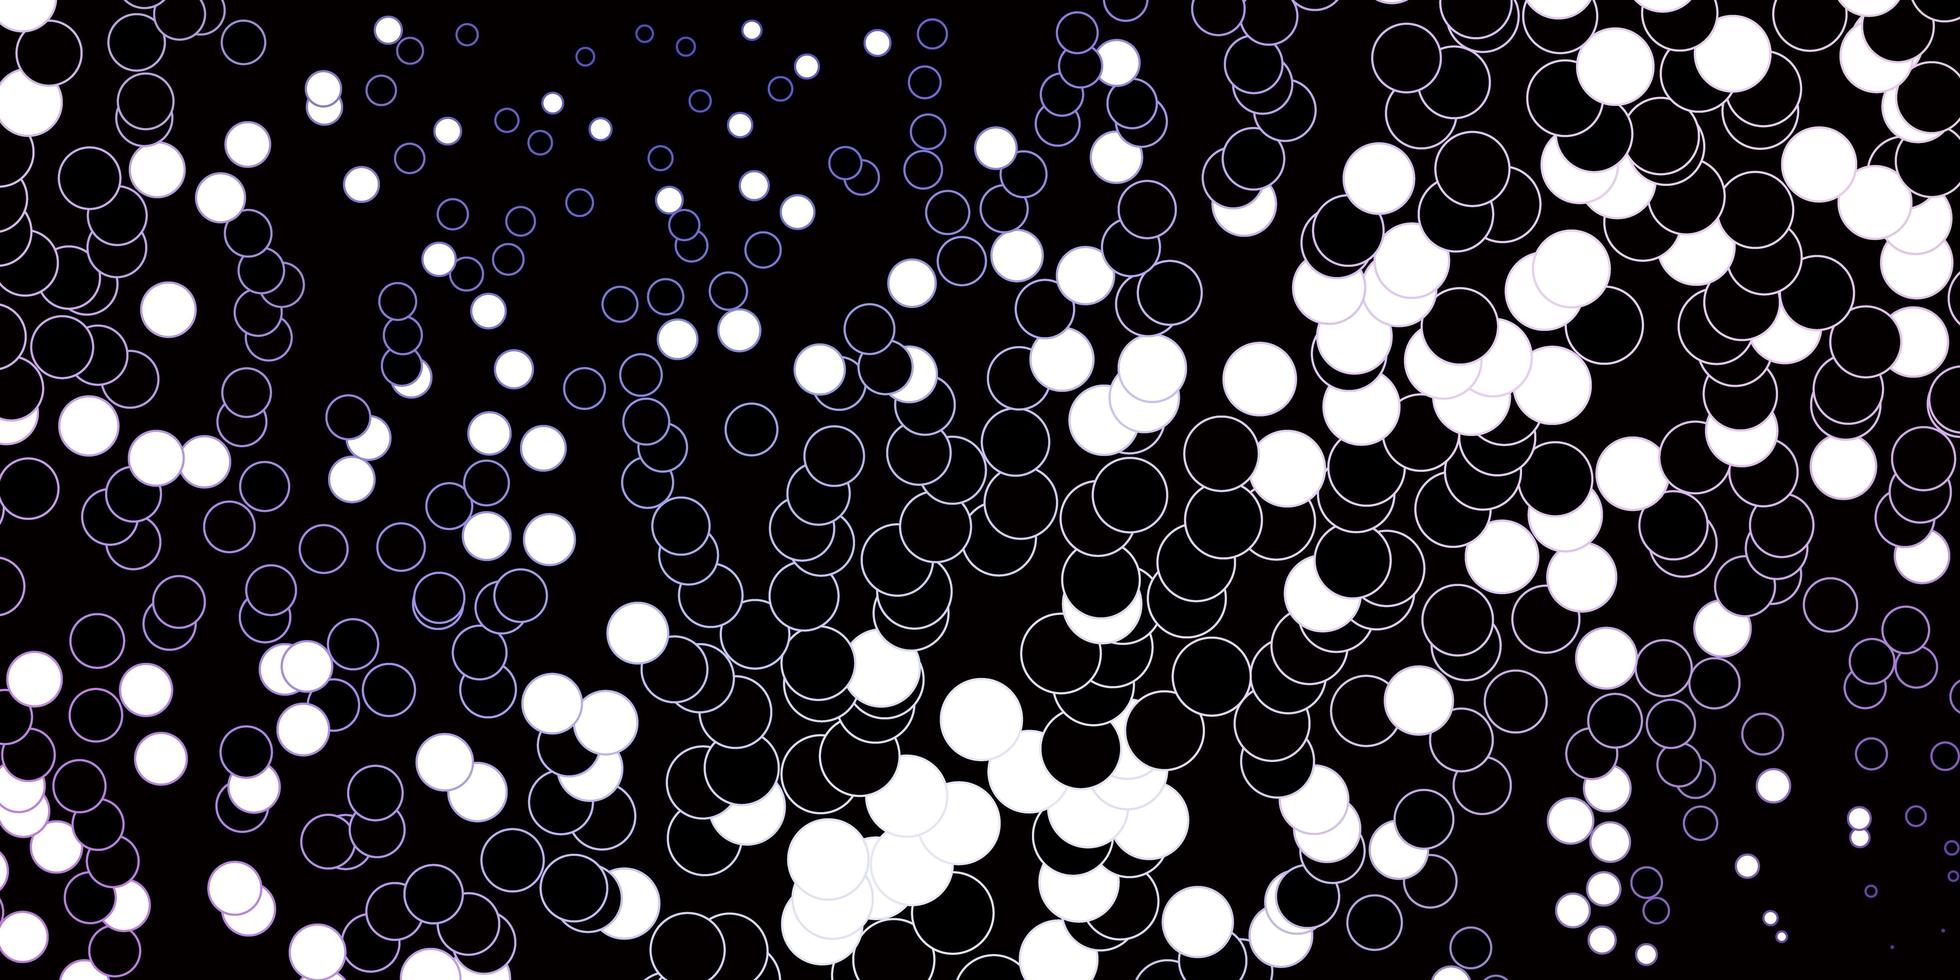 motif vectoriel rose foncé, bleu avec des sphères. illustration abstraite avec des taches colorées dans un style nature. modèle pour les sites Web.